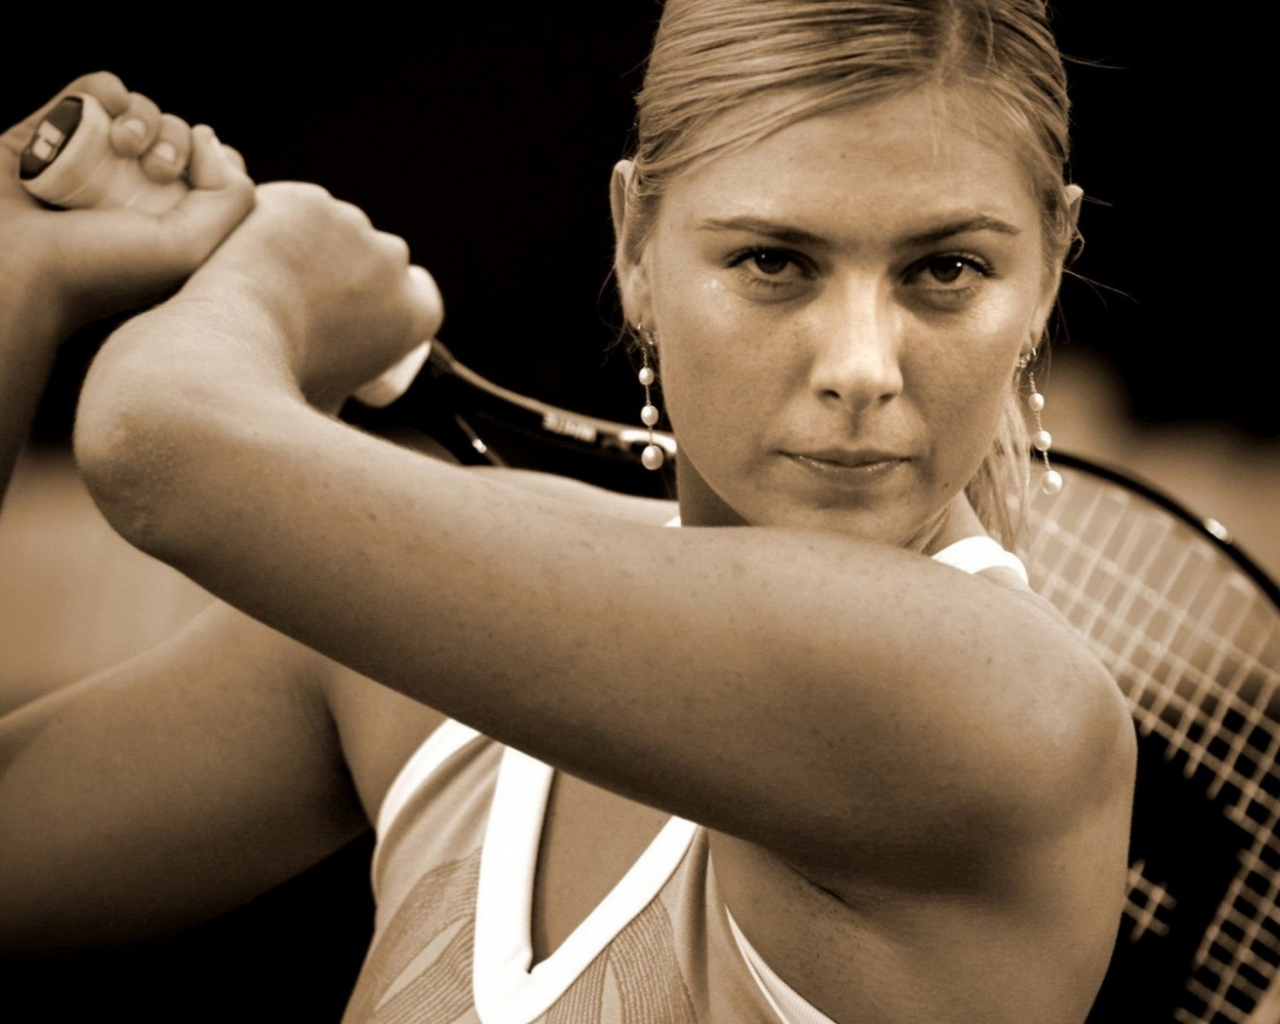 мария шарапова, теннисистка, maria sharapova